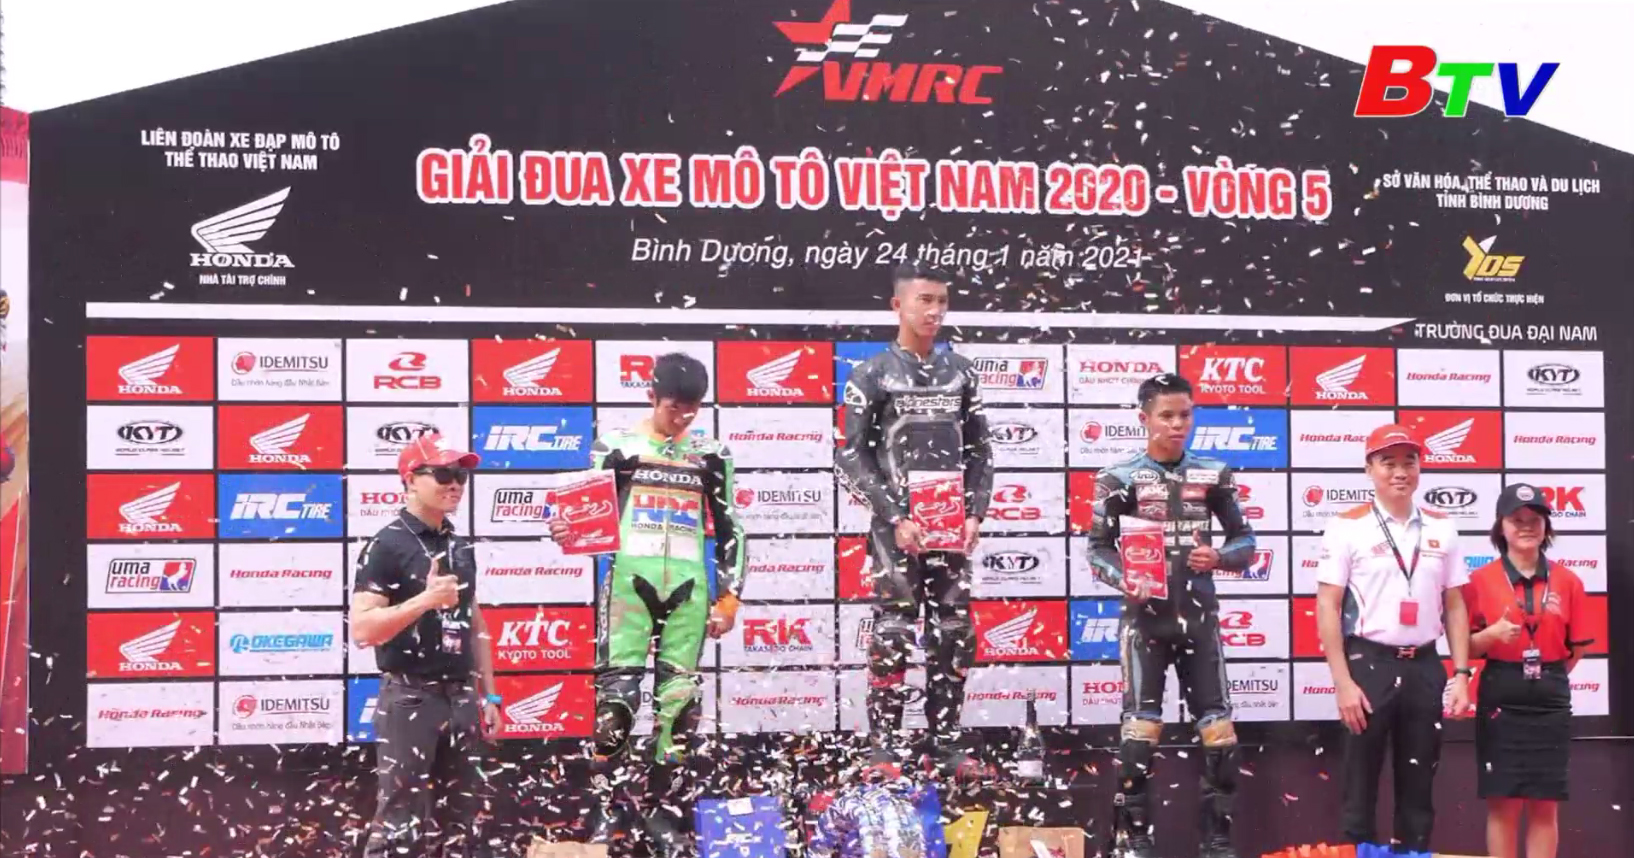 Chặng 5 Giải đua xe Mô tô Việt Nam